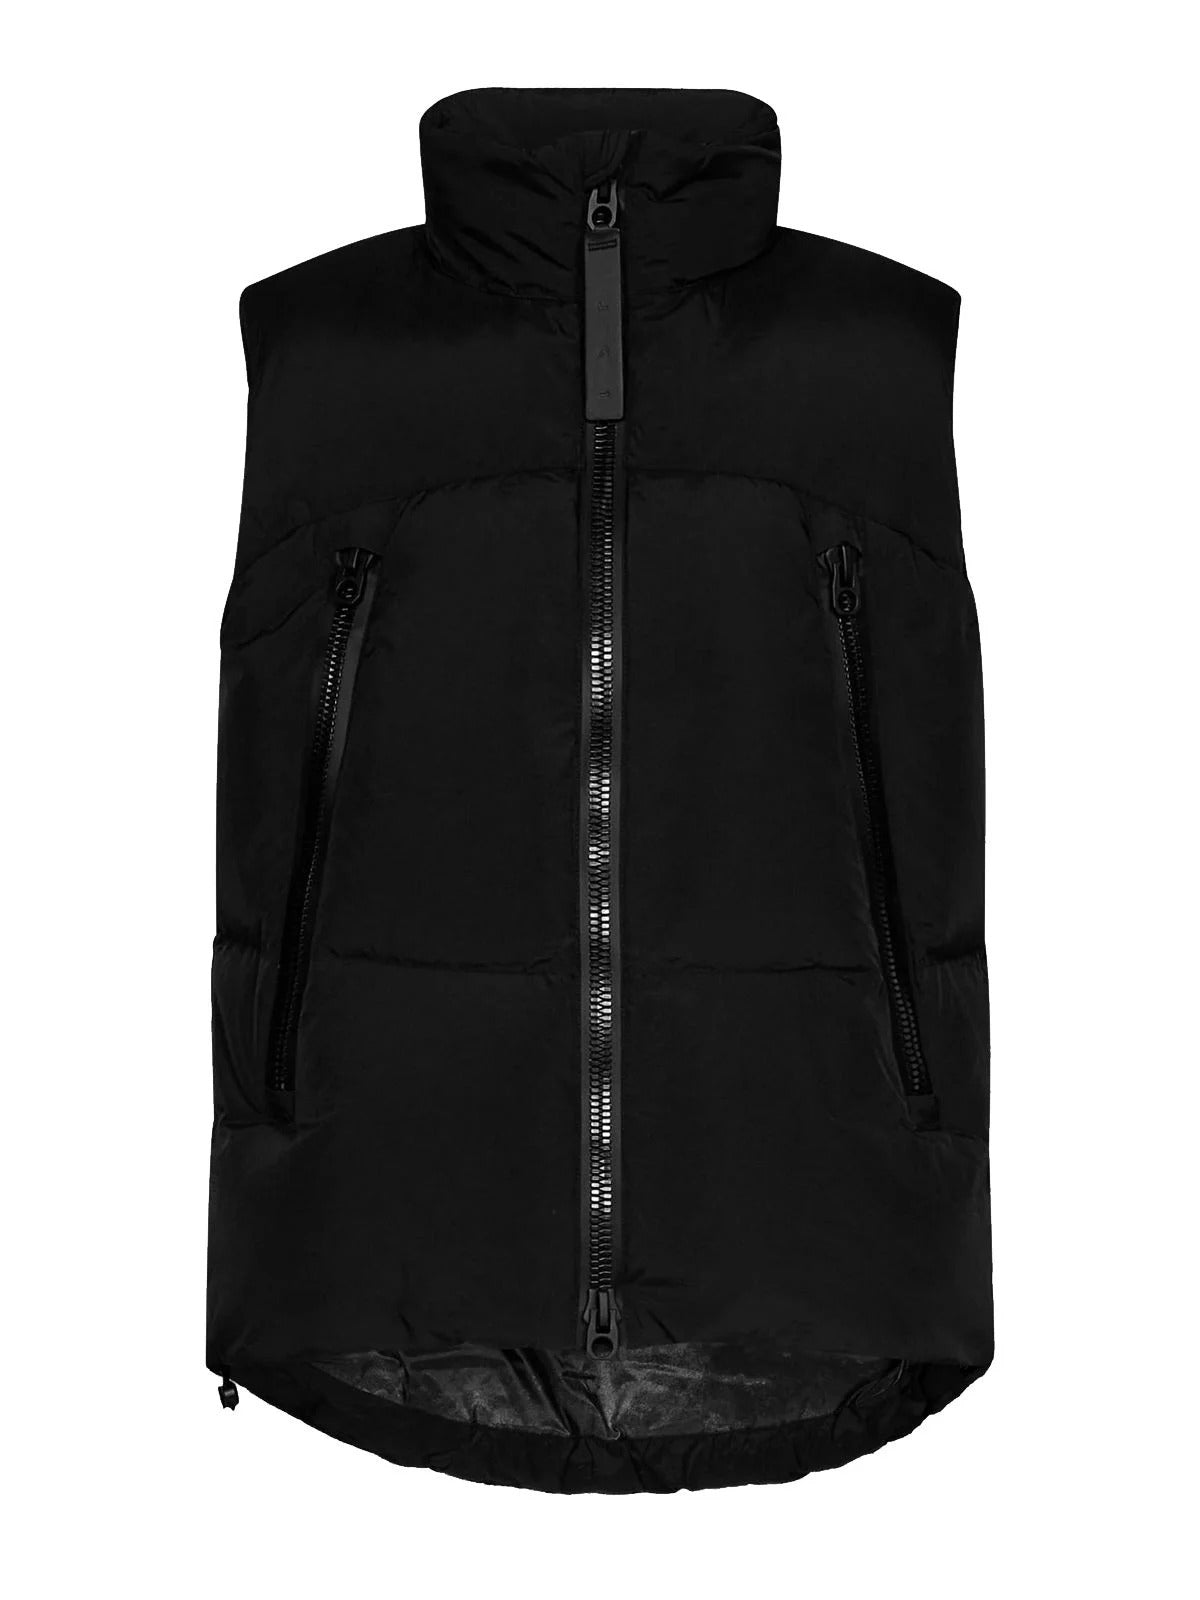 Black padded vest